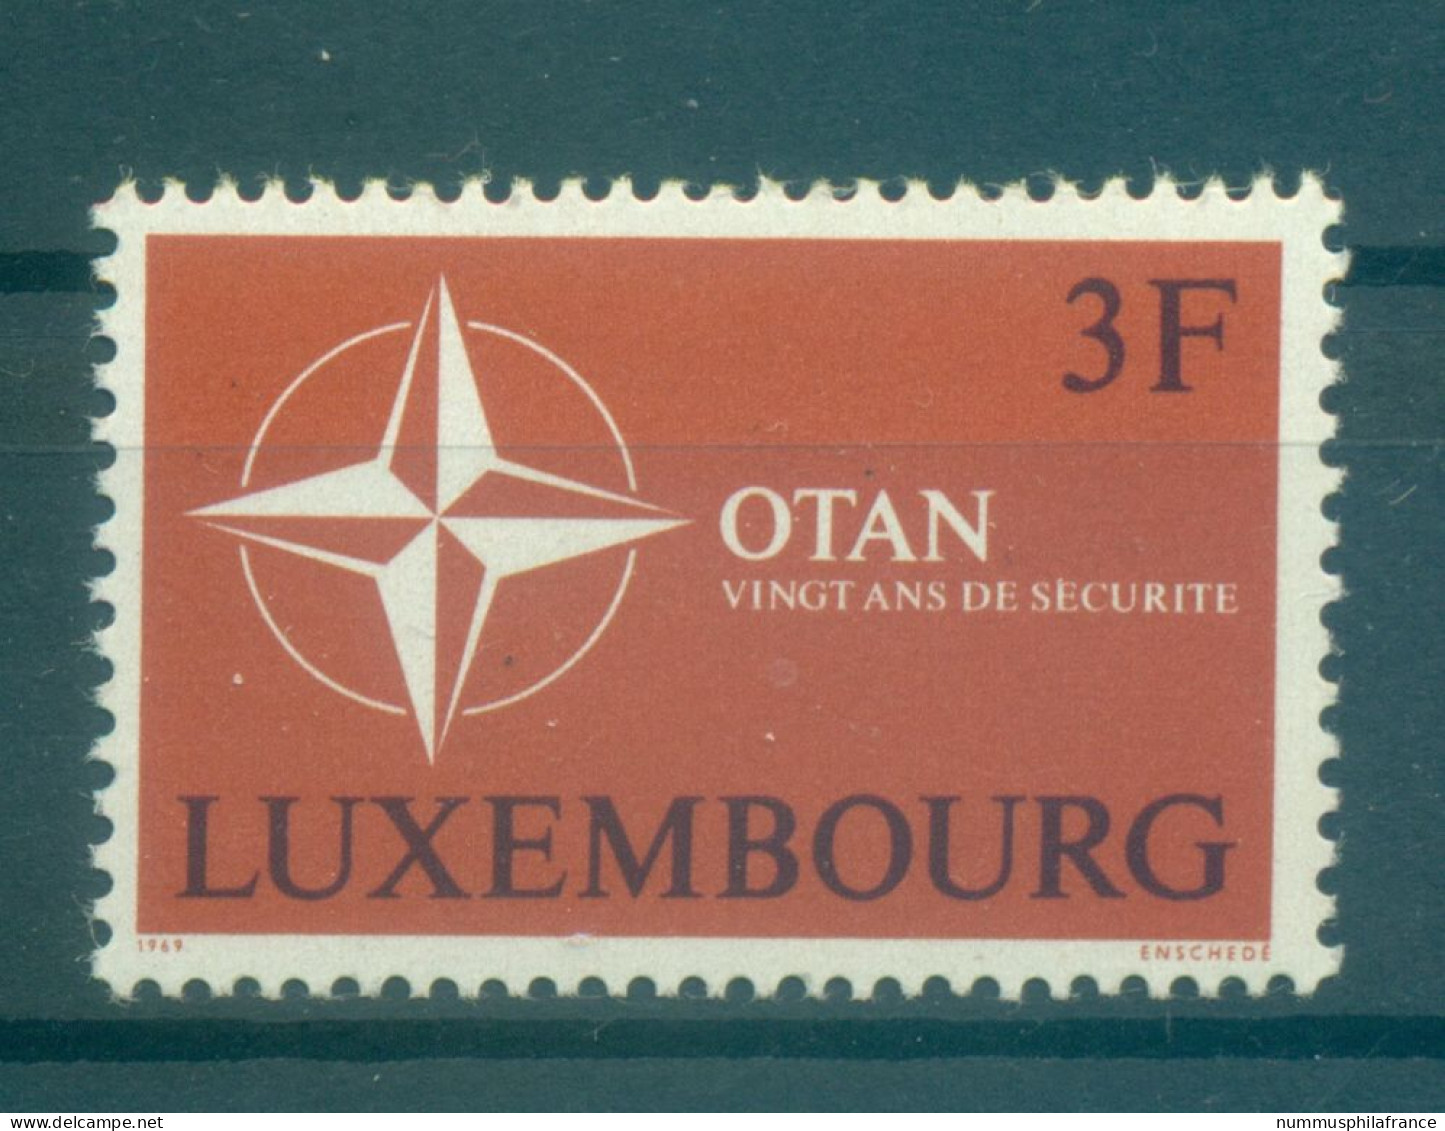 Luxembourg 1969 - Y & T N. 744 - OTAN (Michel N. 794) - Ongebruikt